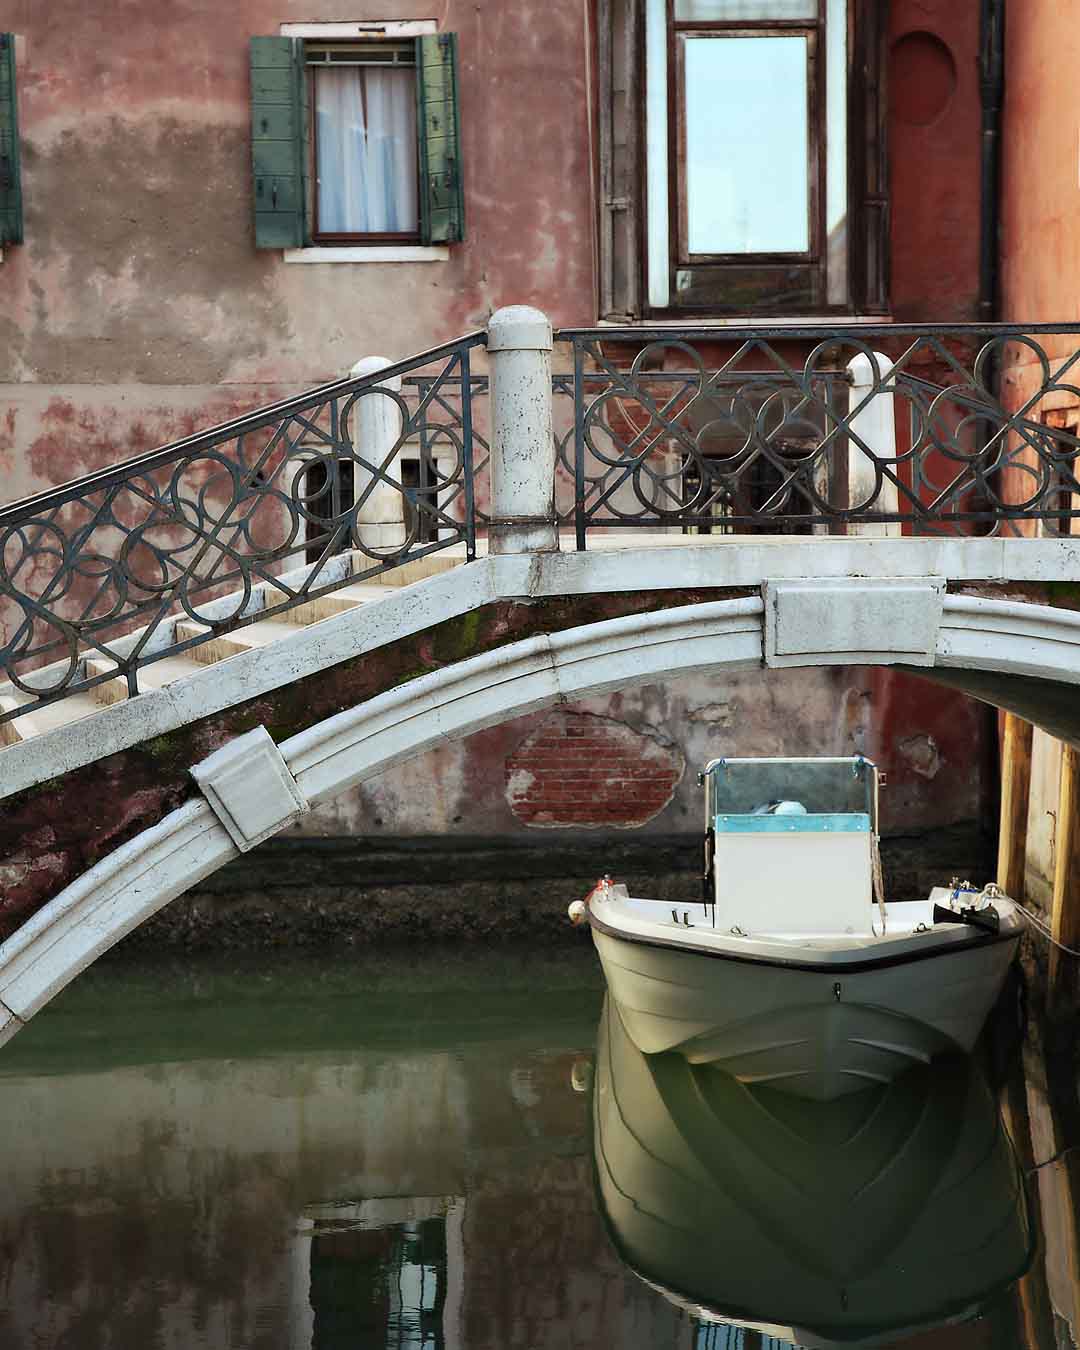 Canale di Dorsoduro #4, Venice, Italy, 2008